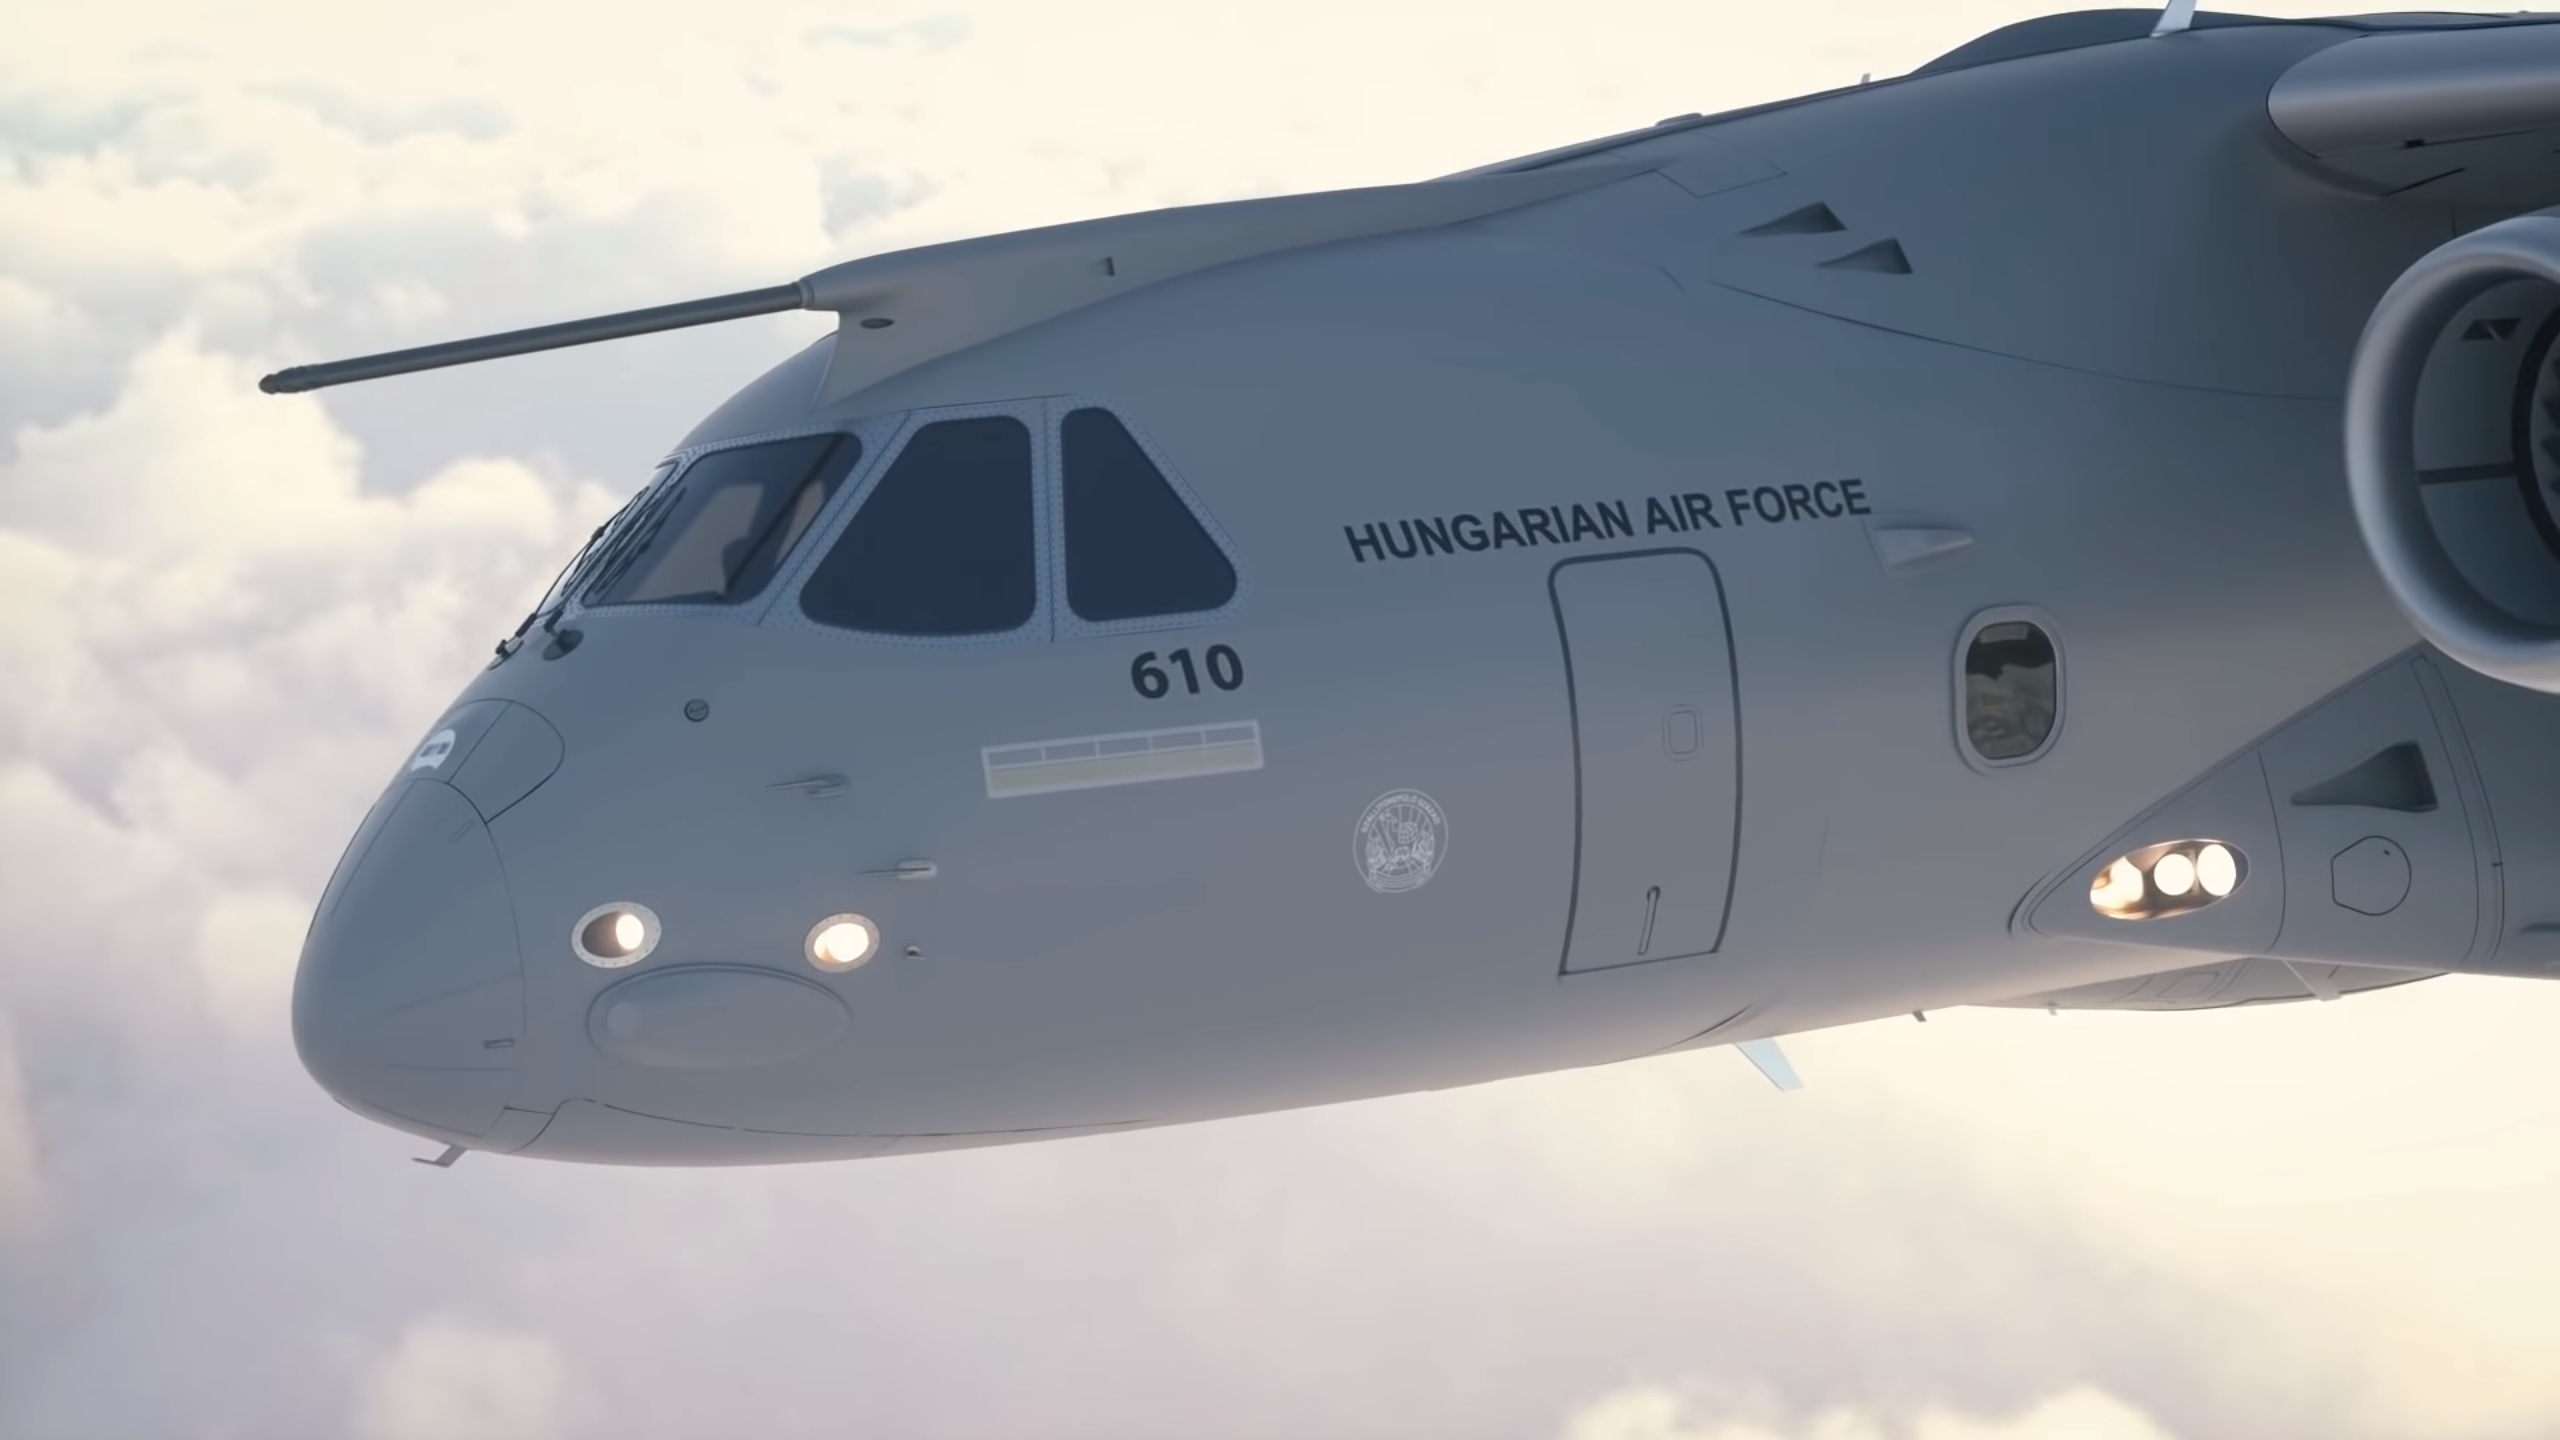 匈牙利軍隊購買巴西航空工業公司飛機kc-390